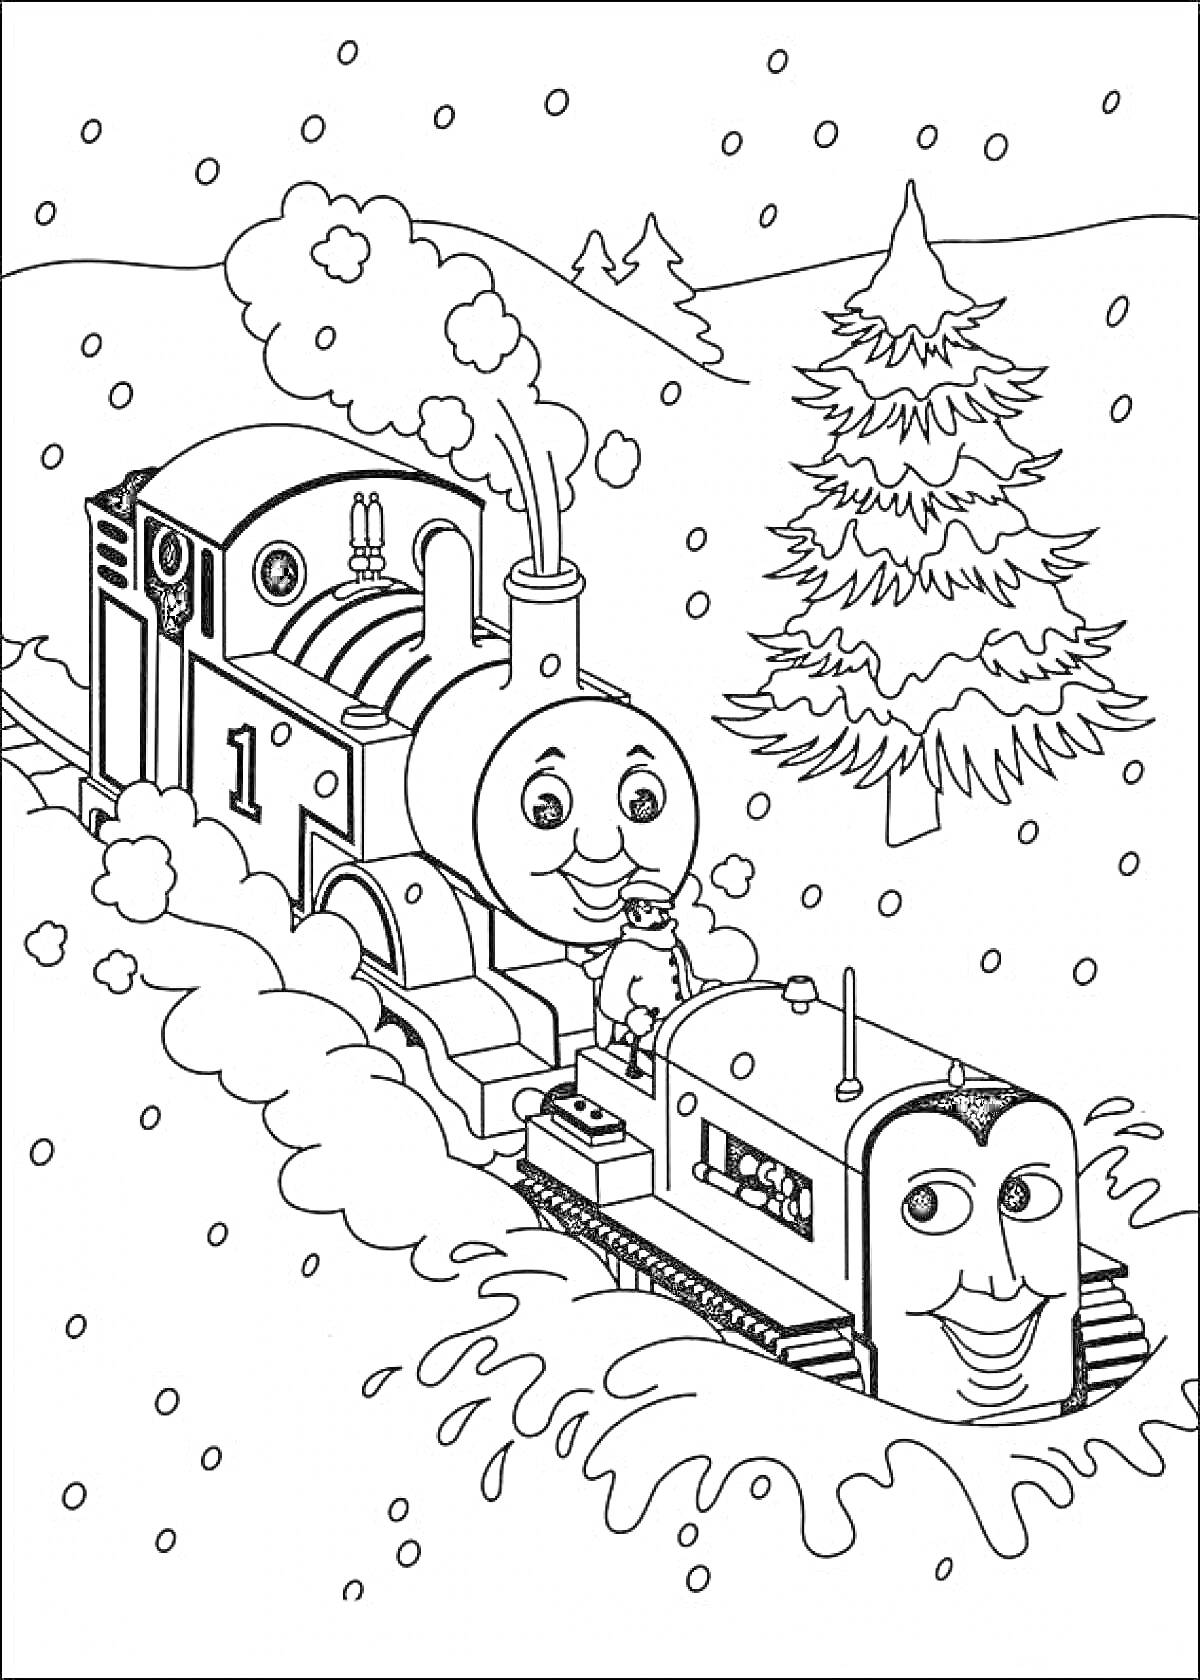 Паровозик Томас едет по заснеженной дороге, на фоне ель и холмы, падает снег